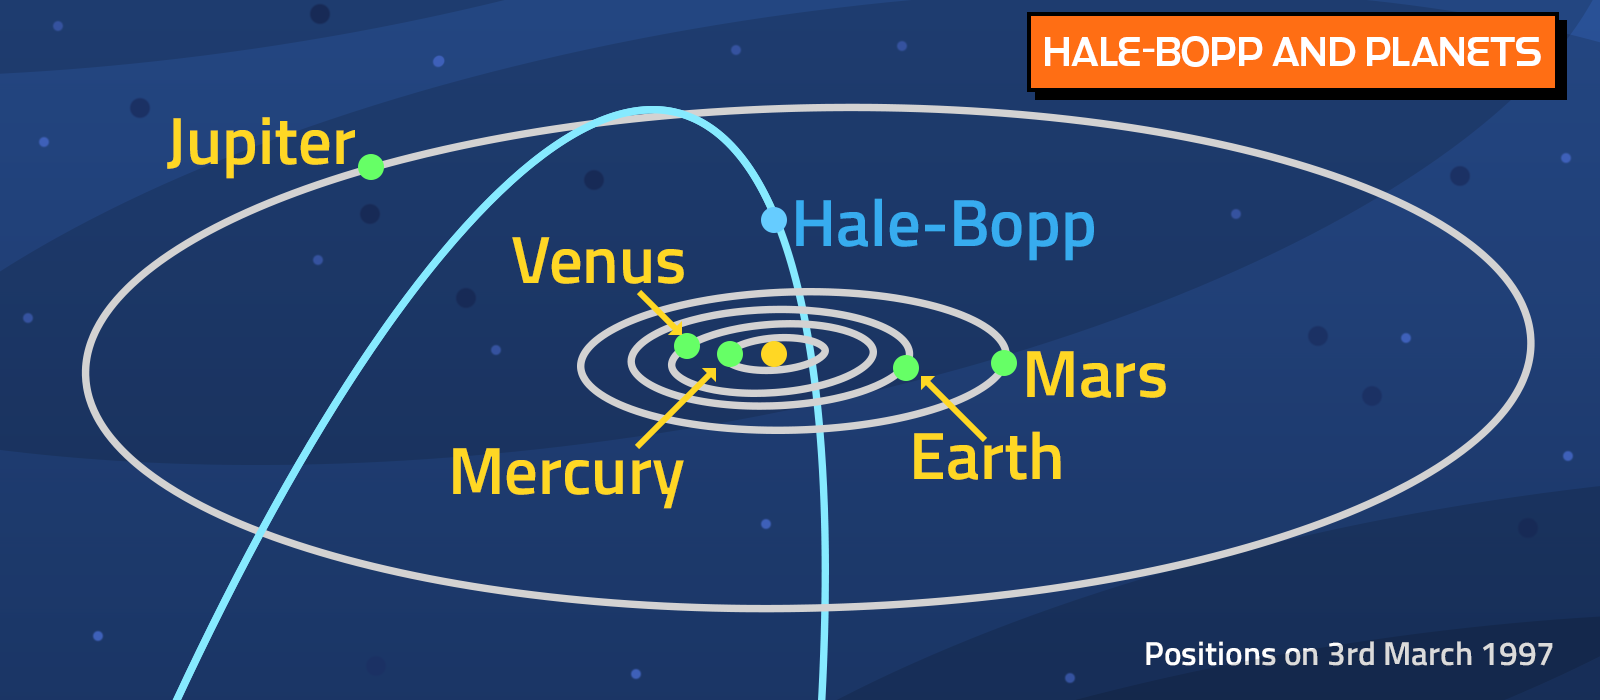 Comet Hale-Bopp - Bob the Alien's Tour of the Solar System